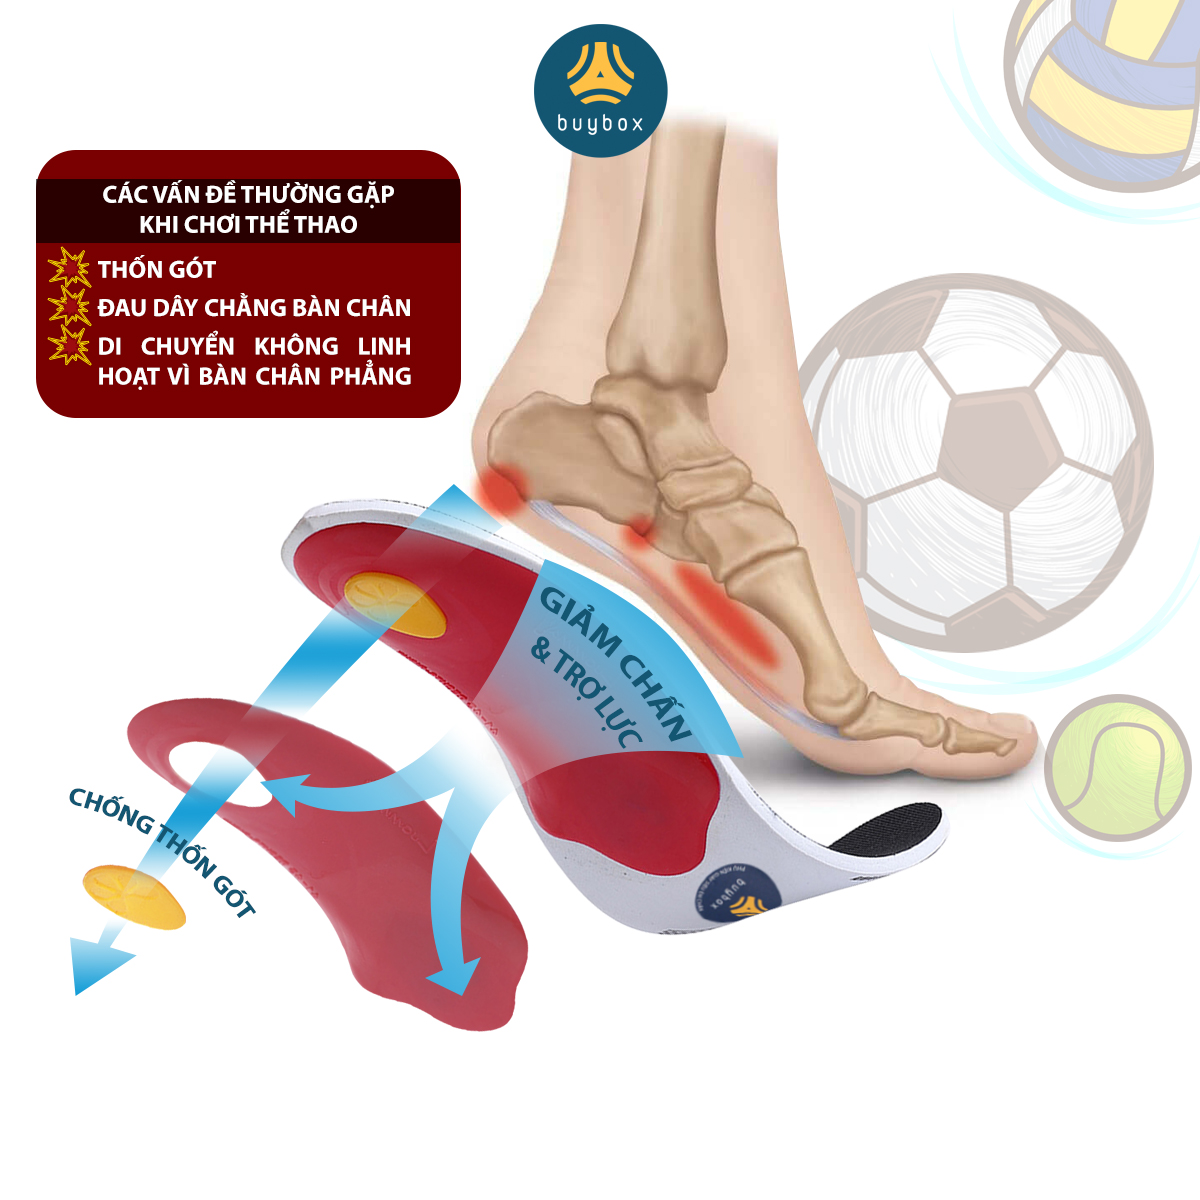 Lót giày vòm cao ốp nhựa chuyên dùng cho bàn chân bẹt phẳng cải thiện dáng đi chân chữ X, giảm đau mỏi lòng bàn chân - buybox - V01BBPK179 hỗ trợ giảm chấn khi chơi thể thao